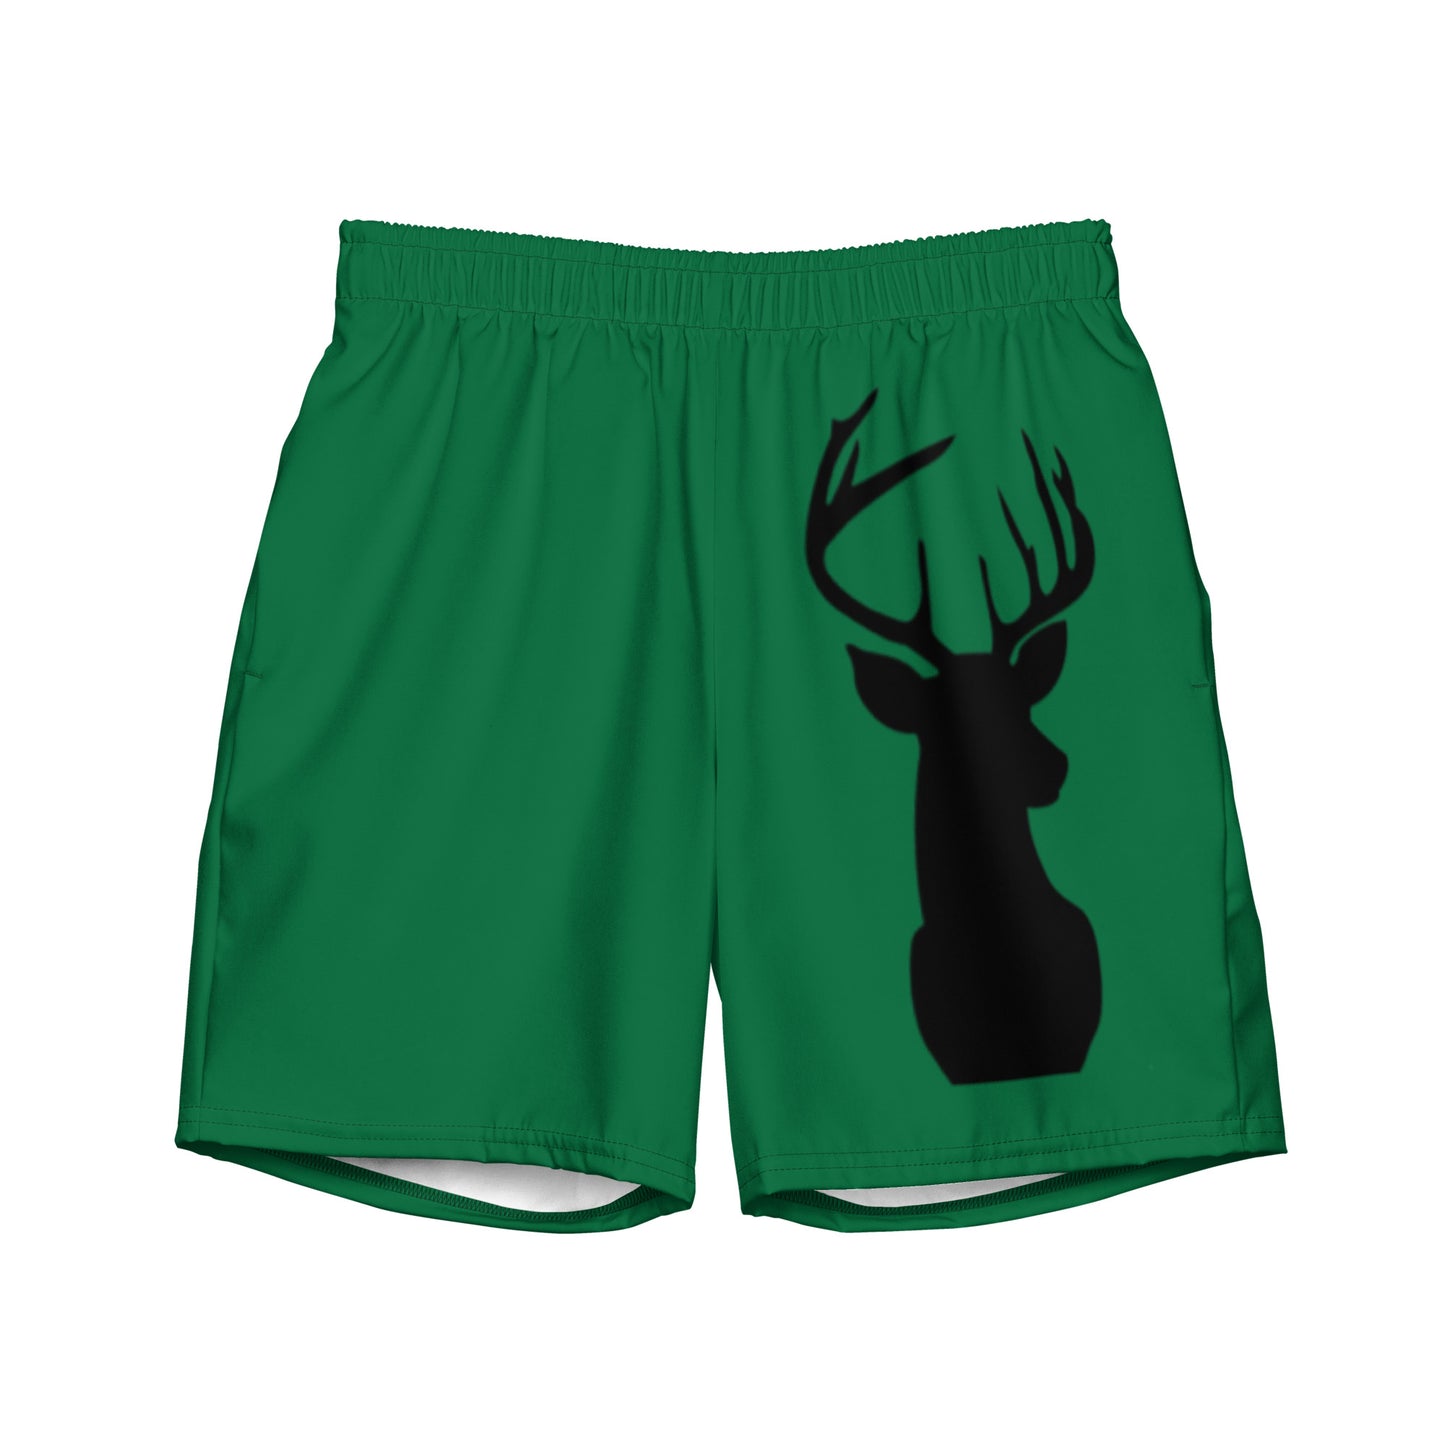 Oh Deer Men's swim trunks